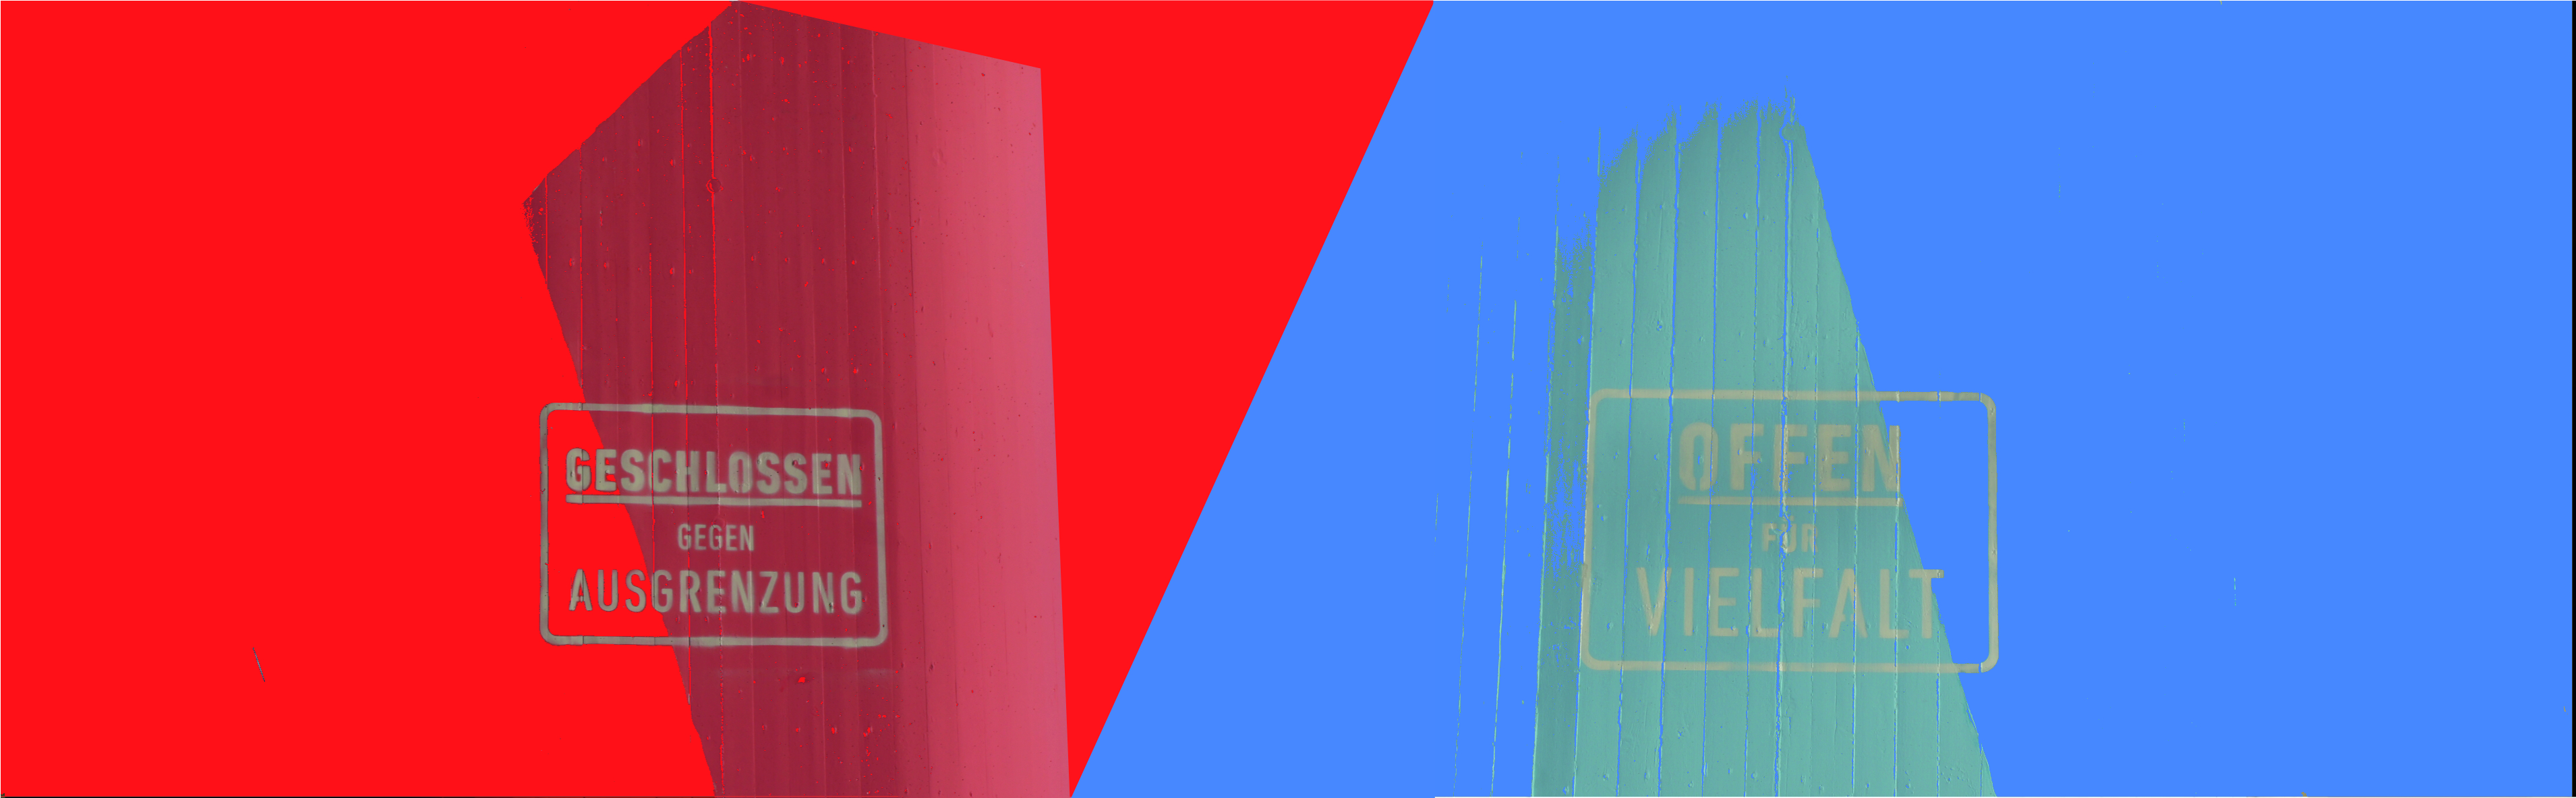 Hier sehen Sie zwei bemalte Betonsäulen. Eine blau, eine rot. Offen für Vielfalt, geschlossen gegen Ausgrenzung